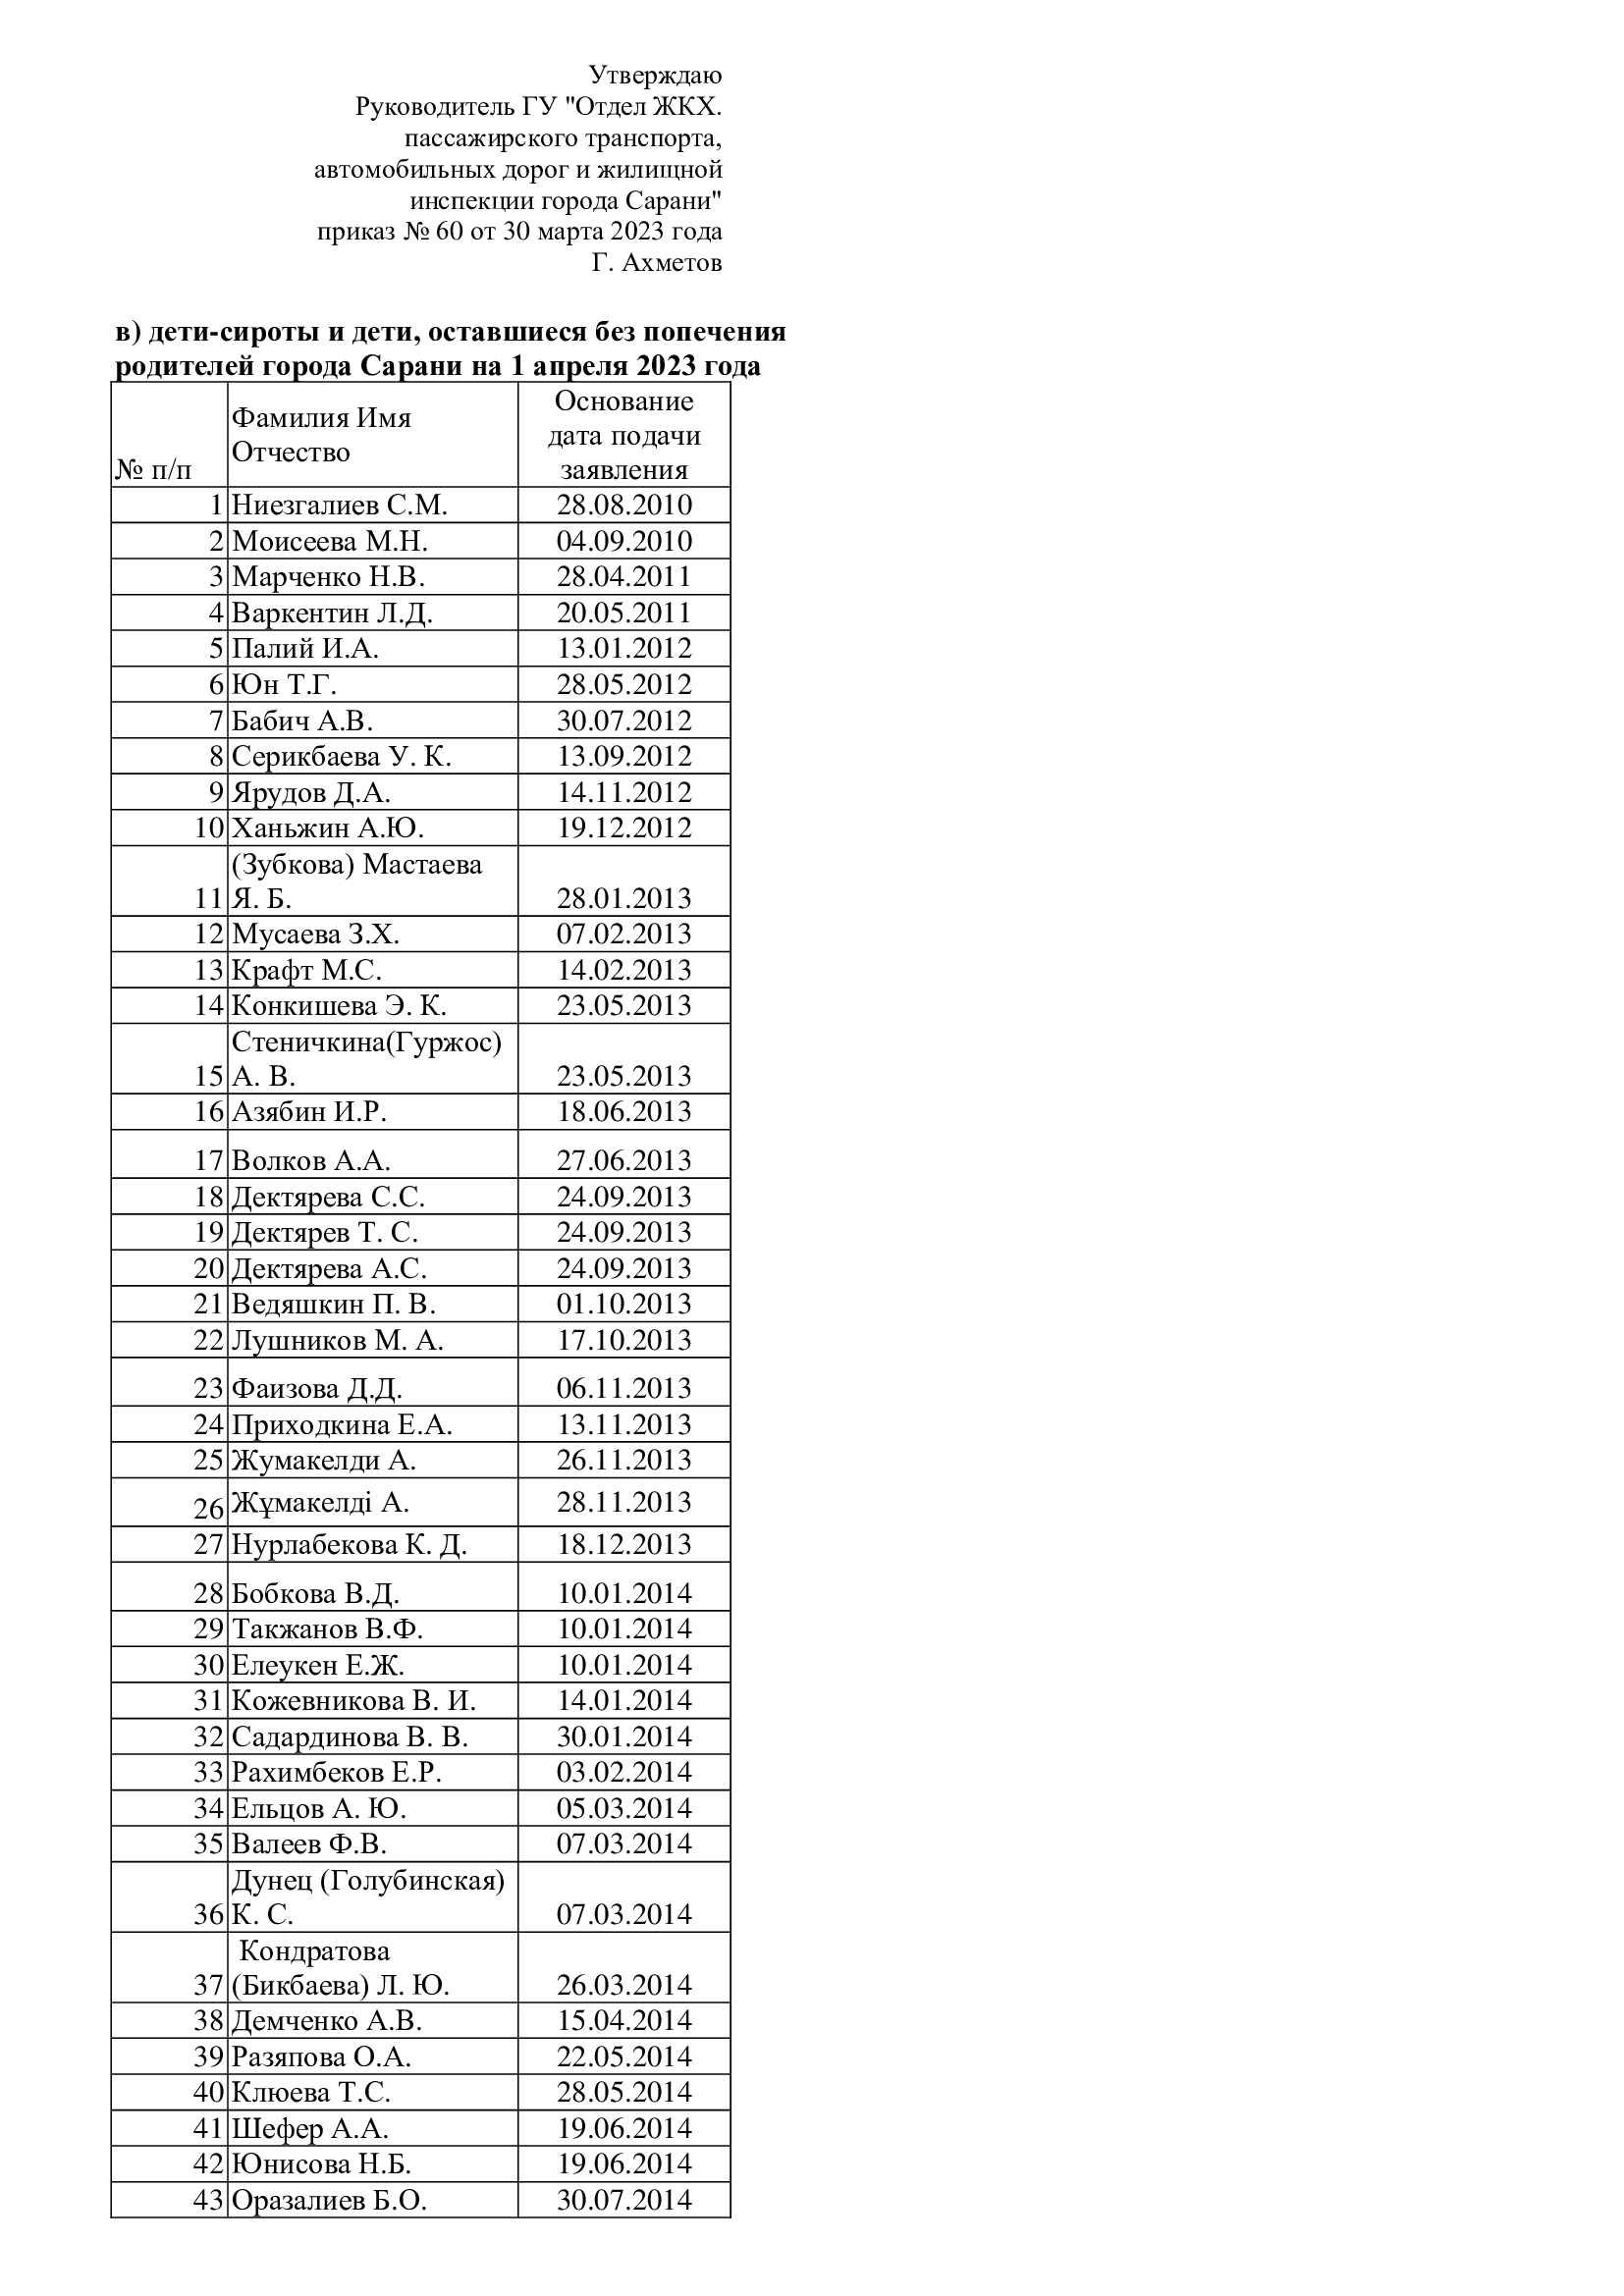 Список очередности граждан, нуждающихся в жилье из государственного жилищного фонда по состоянию на 1 апреля 2023 года по категории дети-сироты и дети, оставшиеся без попечения родителей